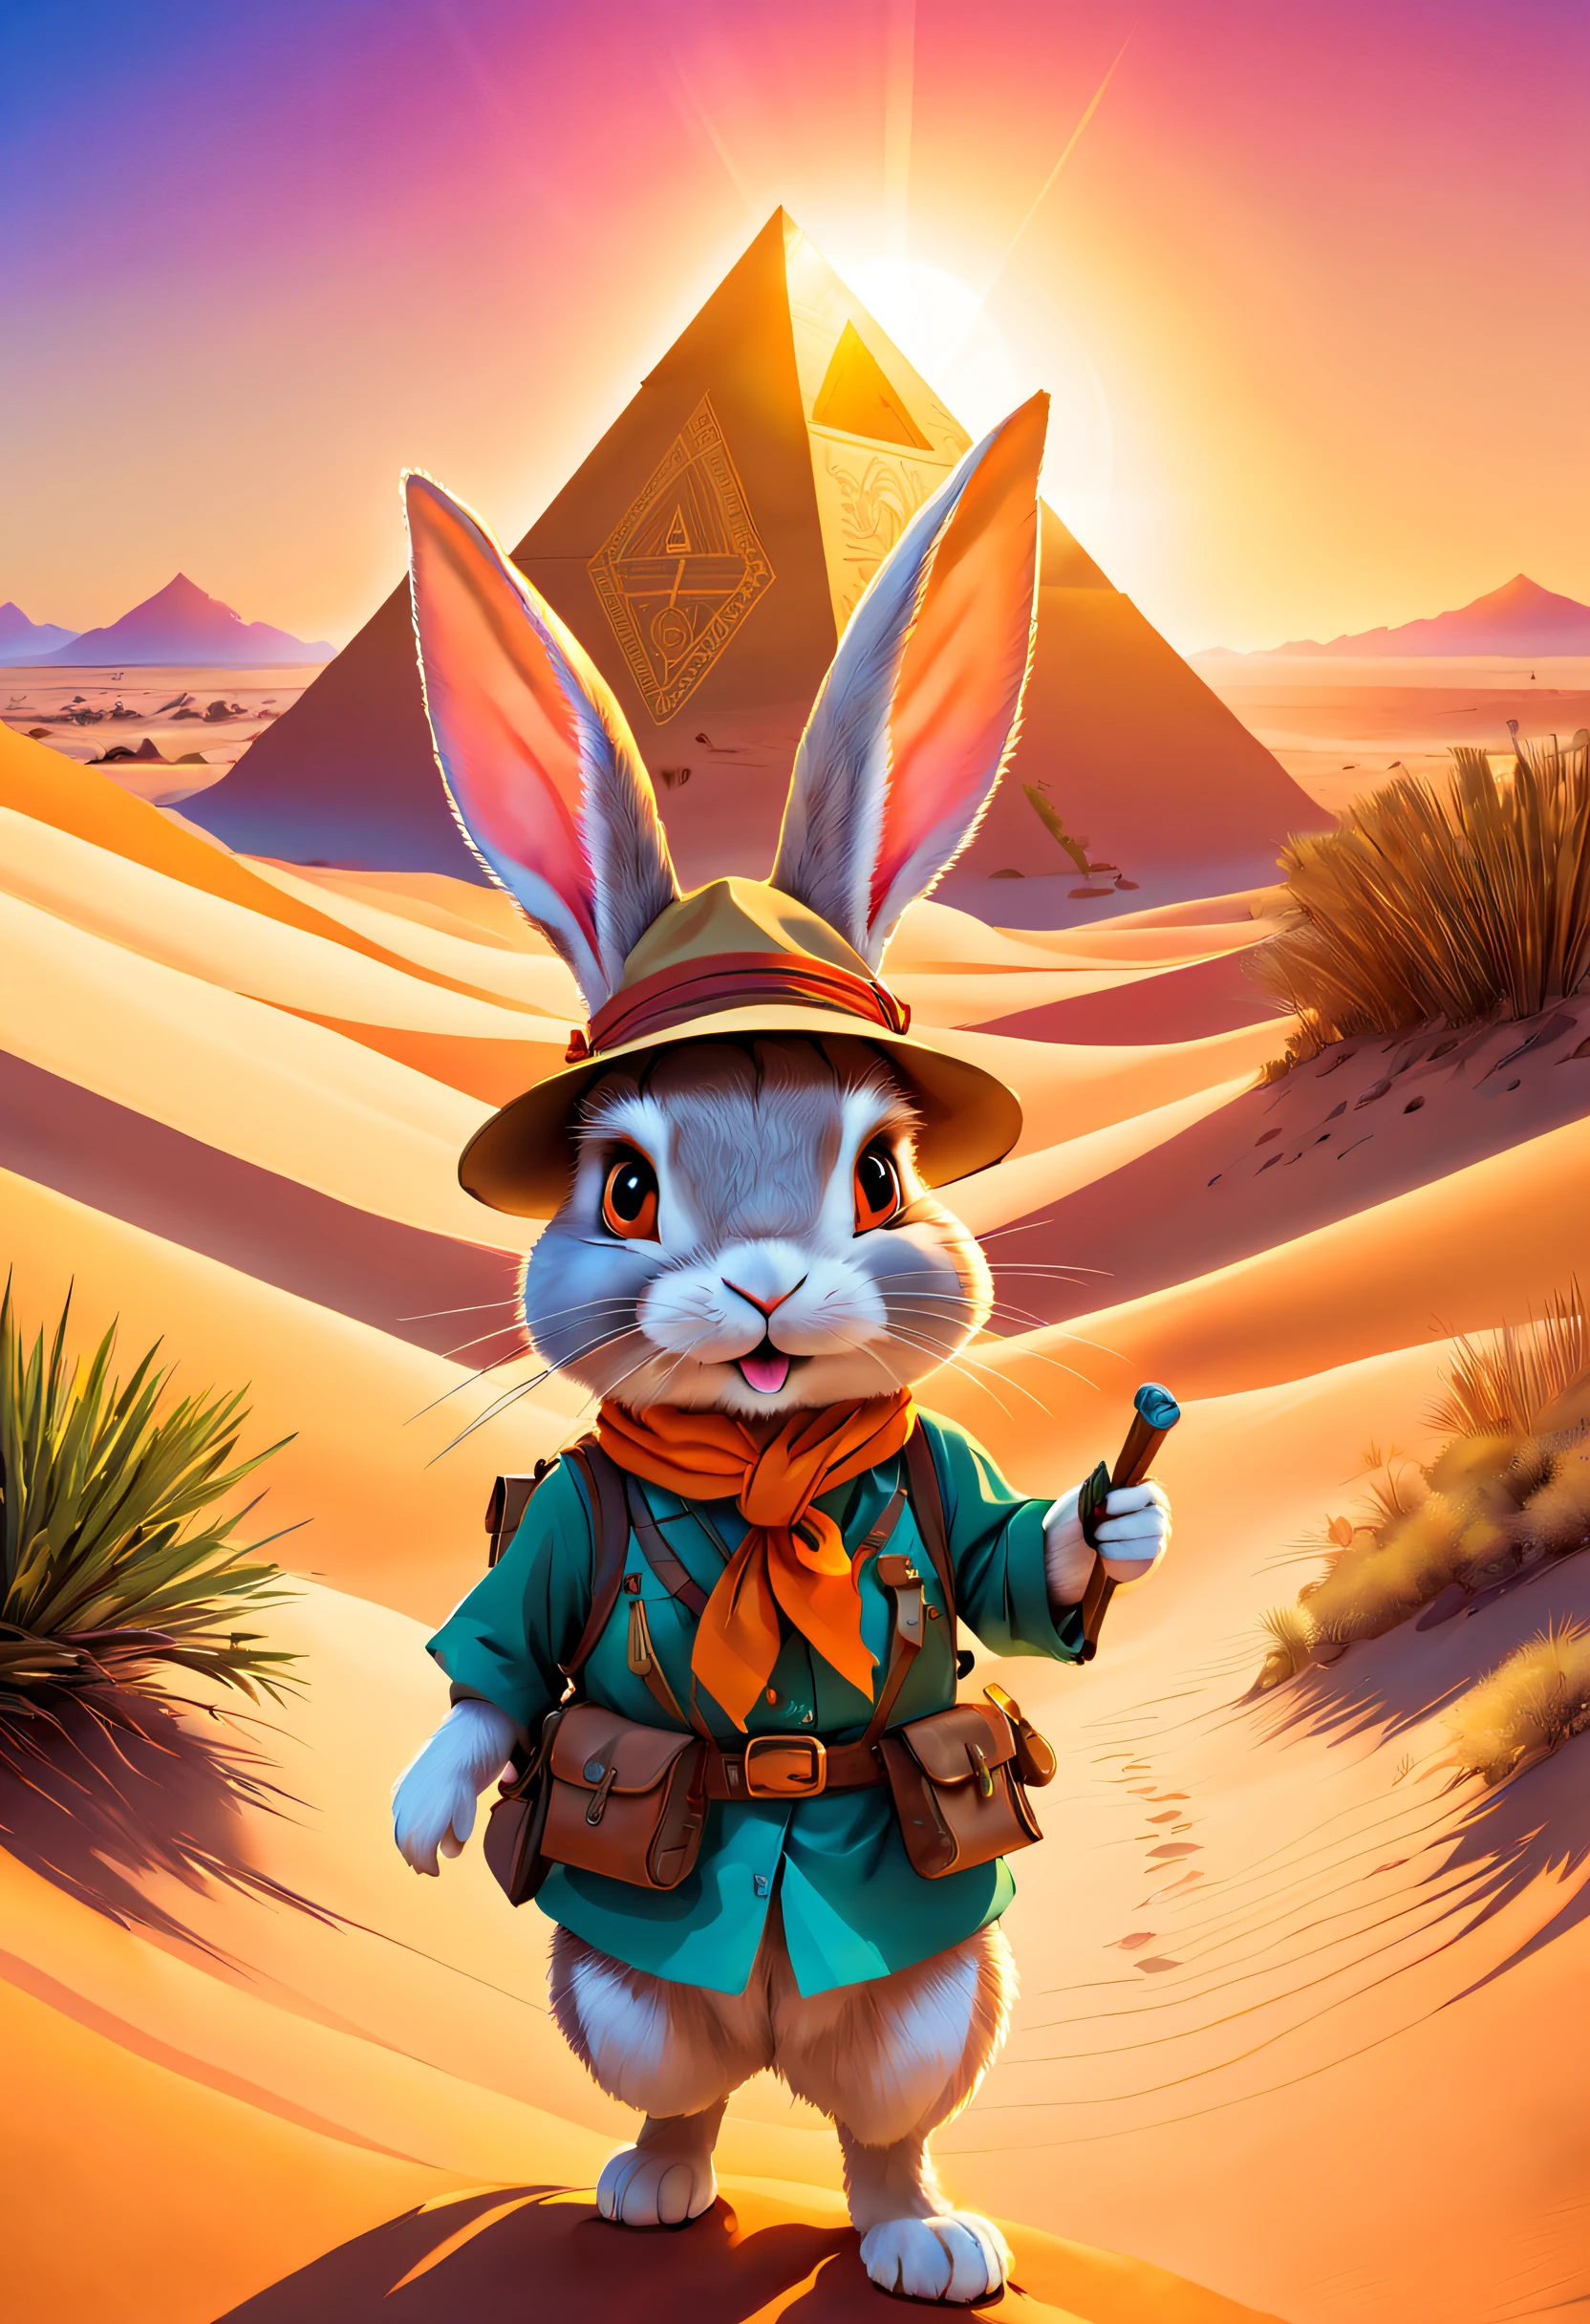 広大な砂漠の中で, 小さなウサギが興奮して冒険に乗り出します. 特別に作られた探検家の衣装を着る. 衣装には小さなポケットも付いています，必要な道具や食料を持ち運べる, つばの広い麦わら帽子をかぶっている，鮮やかなシルクスカーフが巻かれています, ファンキーなオレンジのサングラスの奥で不思議そうに輝く目, 彼女の手には, ((ウサギは古い地図を持っています))，砂漠のピラミッドの位置は上にマークされています. 砂丘や砂漠の植物の中を歩く, 一歩ずつ, あなたは目的地に到達できるでしょう. そびえ立つ建物は金色の砂でできている，太陽の光に輝く. その表面には、神秘的なシンボルや模様が刻まれています, 夕日がピラミッドの上に暖かい光を投げかける, 小さなウサギはピラミッドの険しい表面を登り始めました. 彼女はあらゆる足場や突き出た石を注意深く探しました，彼女の安全を確保するため. 彼女がついに山の頂上に到着したとき, 彼女は壮大な砂漠の景色に感動した. ピラミッドの頂上から, ルルには遠くまで続く果てしない砂漠が見えた. 太陽が黄金色の砂丘を照らします, パーティーアニマルスタイルで, (ジブリのような色彩, 映画照明, 一人称視点, 視野角, パノラマビュー, 超広角, ハイパーHD, 解剖学的に正しい, 傑作, 正確な, 受賞歴, 最高品質)，動物スタイル, 服を着た動物のページ